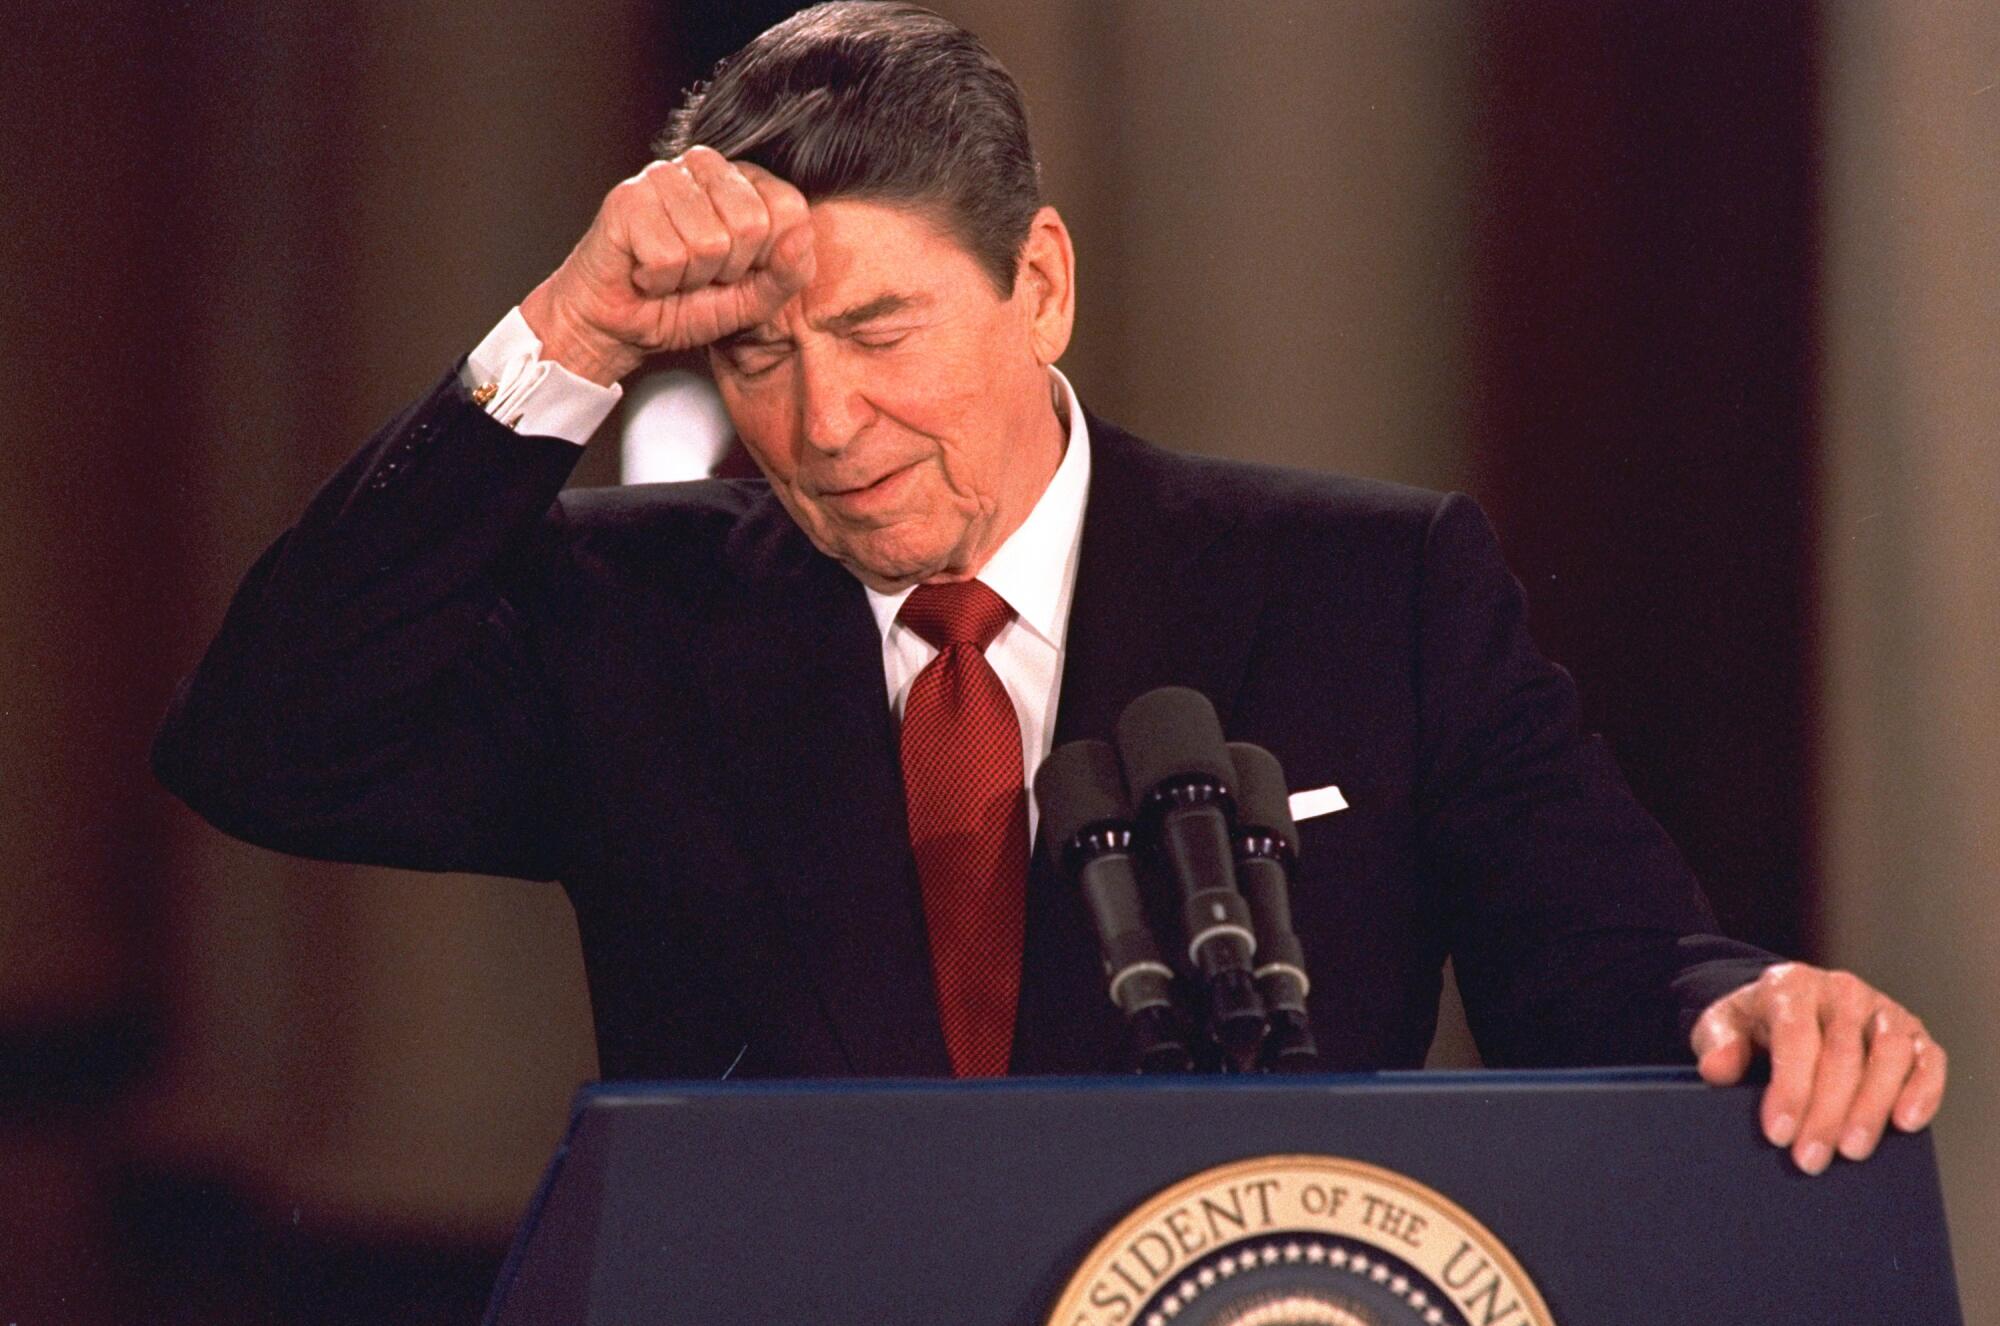 O presidente Reagan, de olhos fechados, mantém o punho direito na testa, a outra mão em um púlpito com o selo presidencial